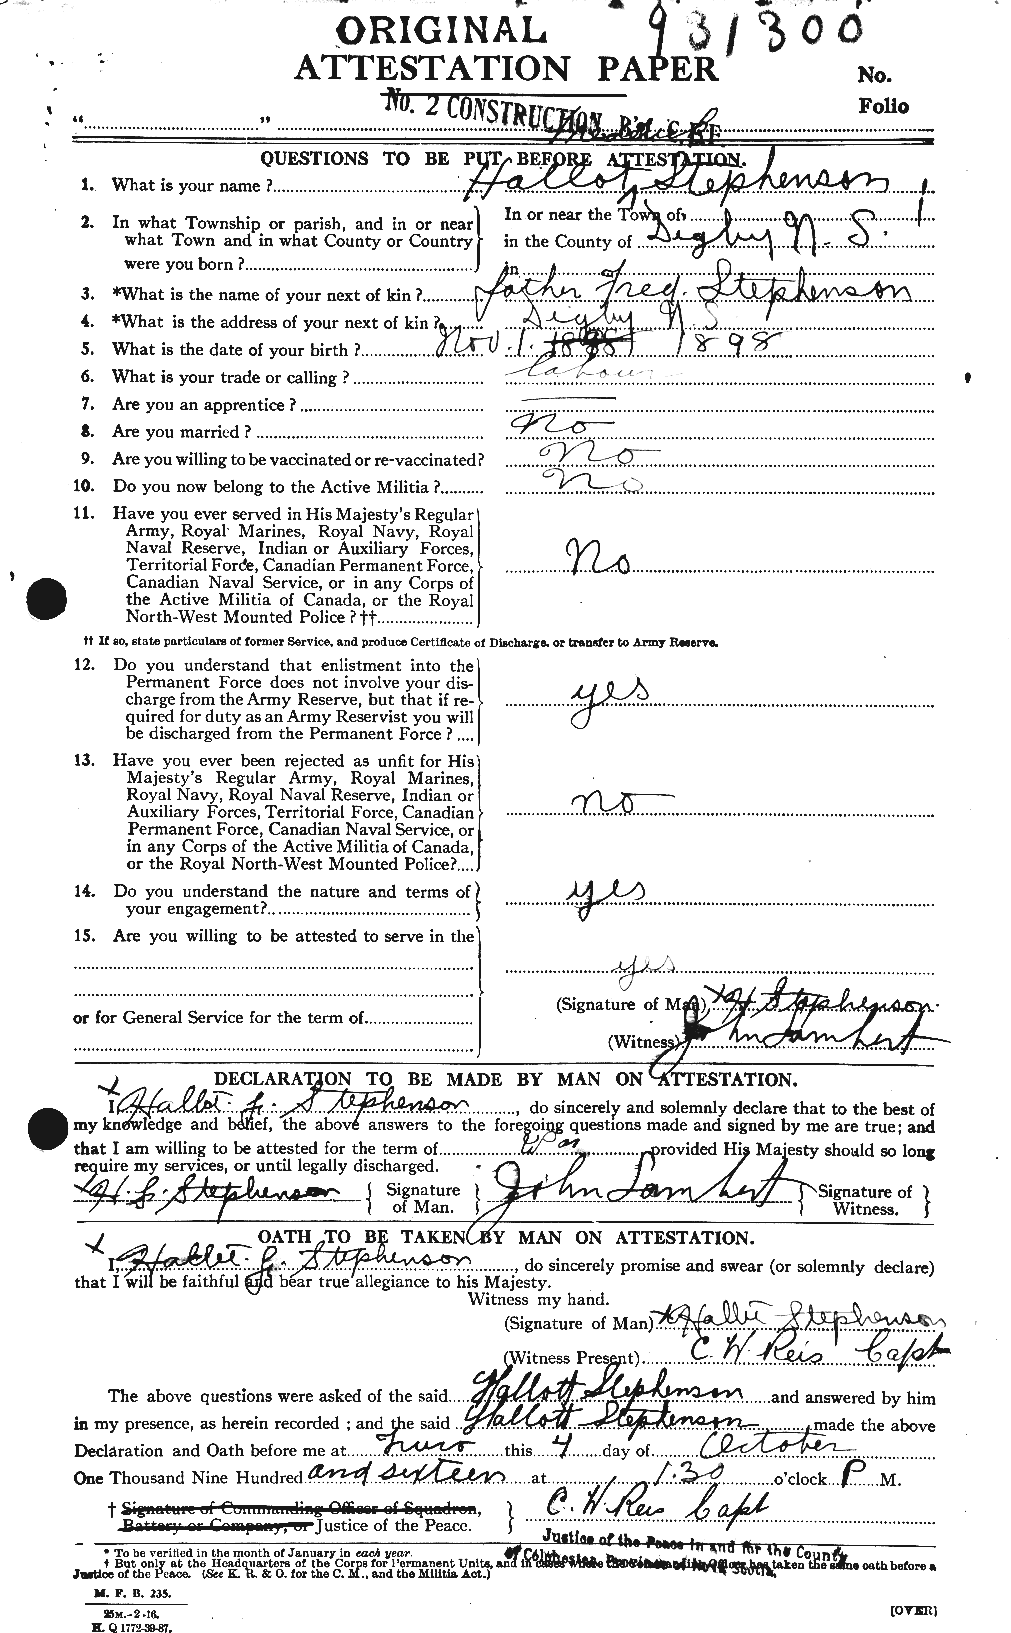 Dossiers du Personnel de la Première Guerre mondiale - CEC 117216a